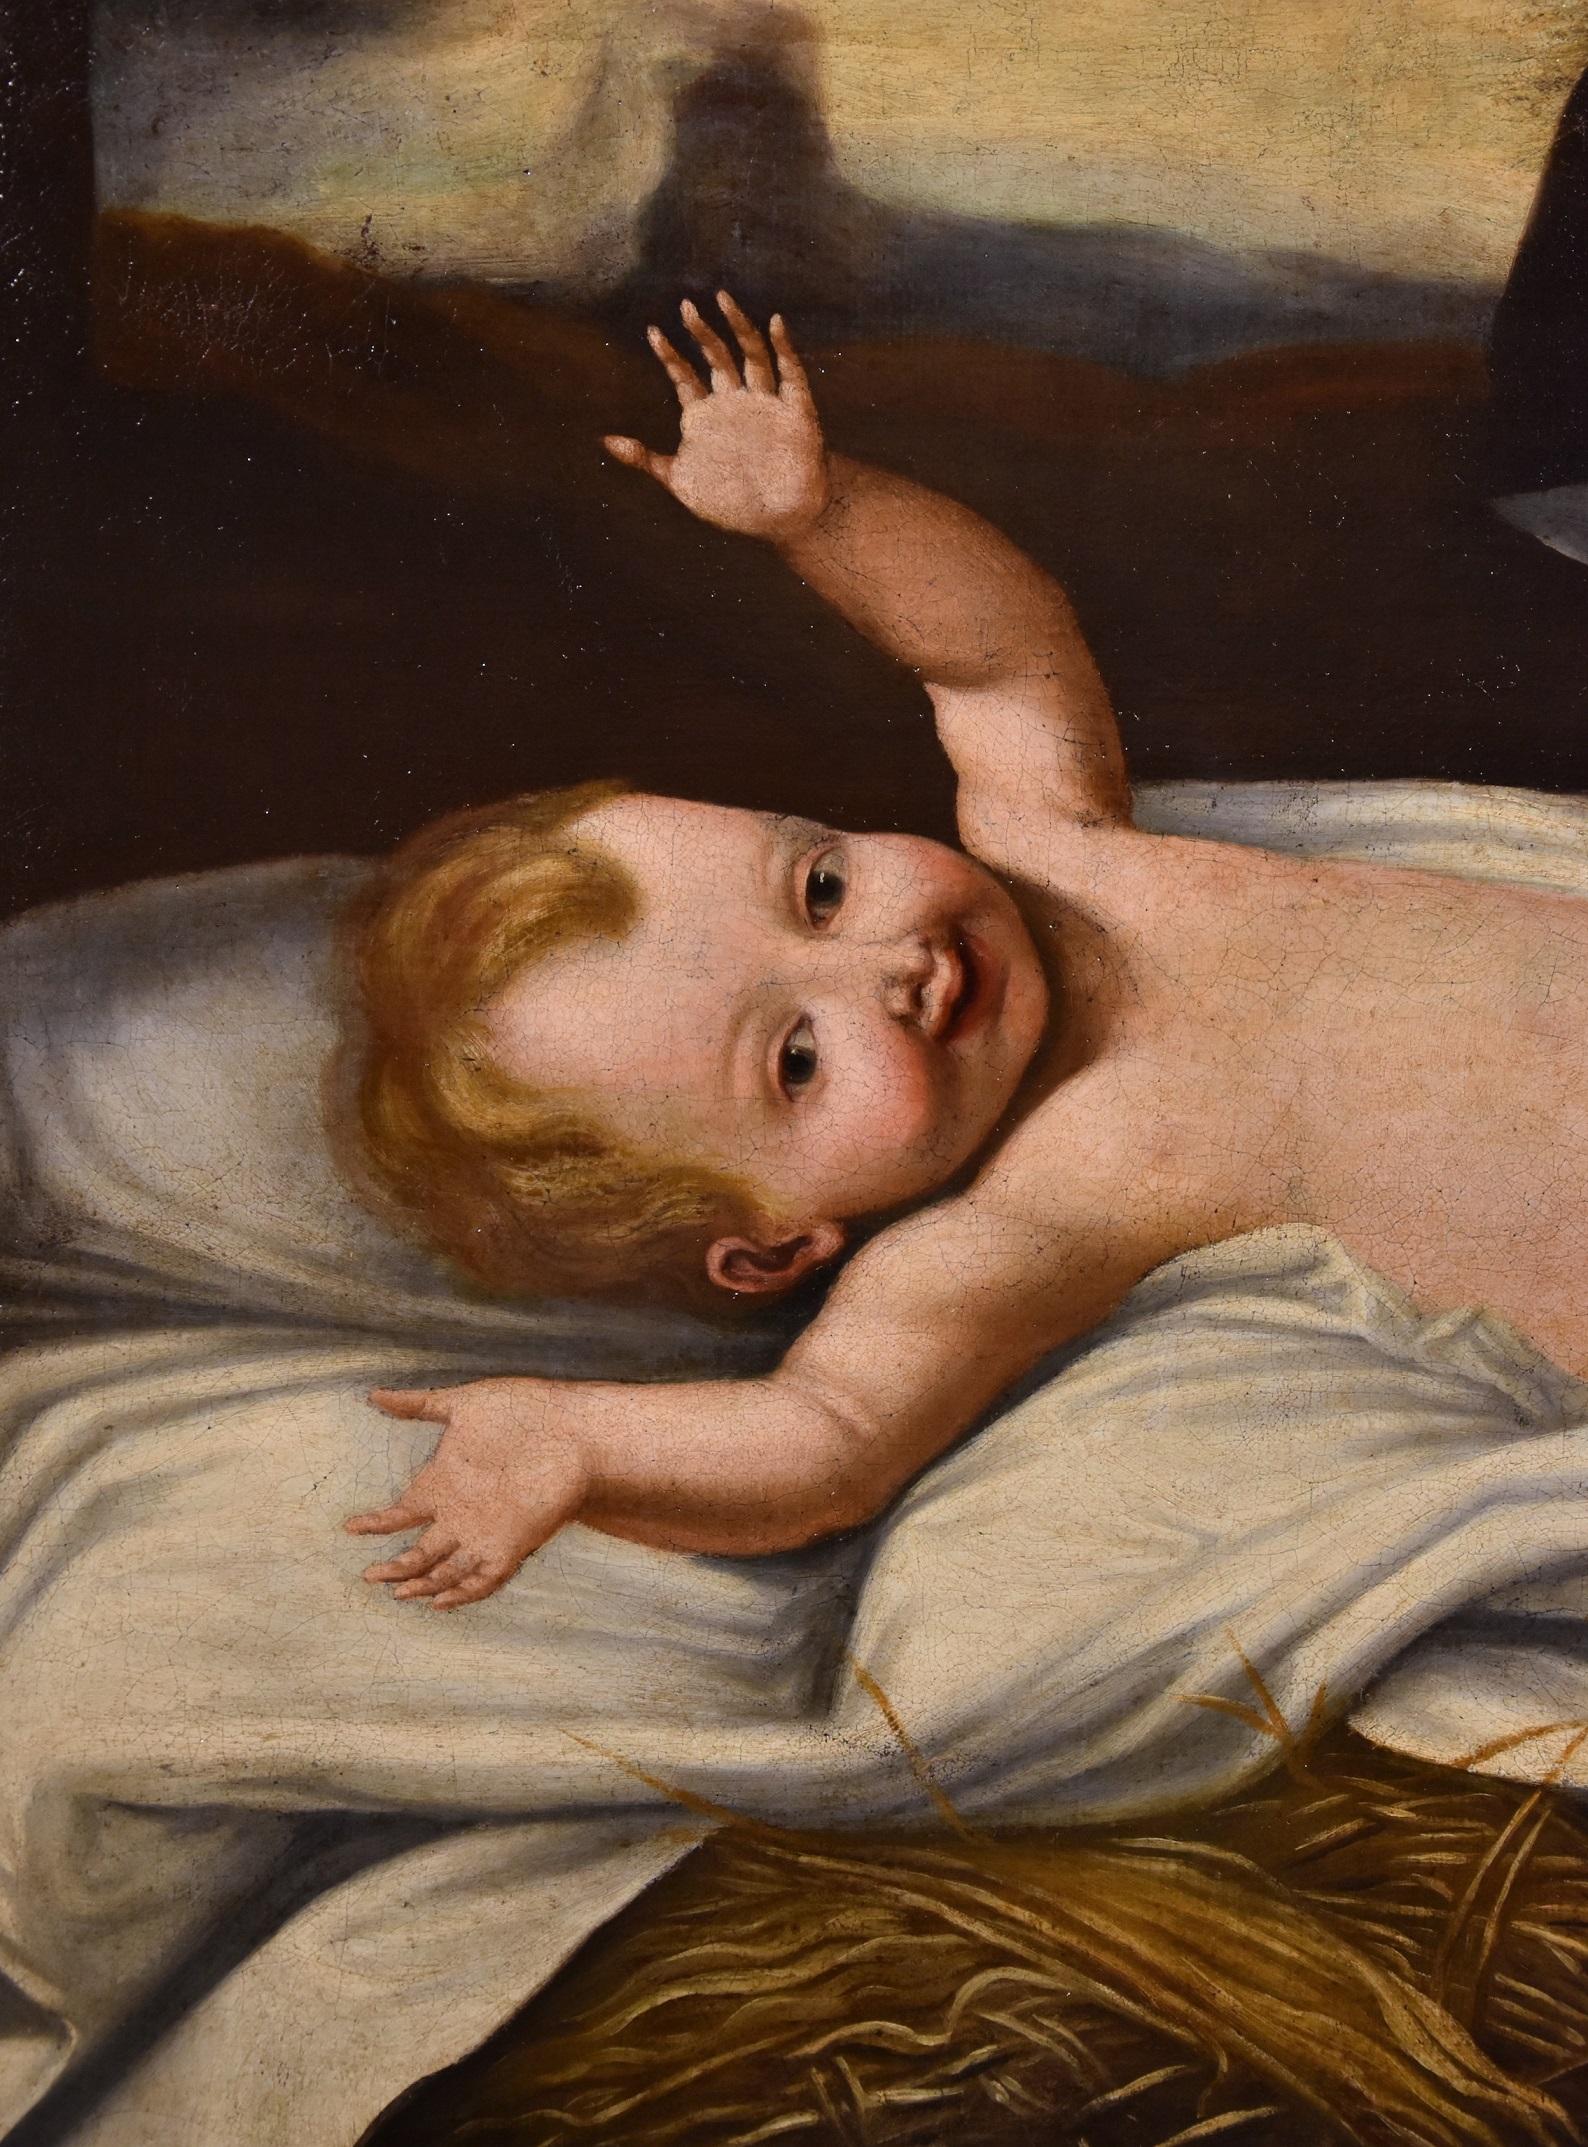 Child Jesus - Peinture à l'huile sur toile - Grand maître - Bébé italien du 17ème siècle - religieux  - Marron Portrait Painting par Lombard painter active in the 17th century